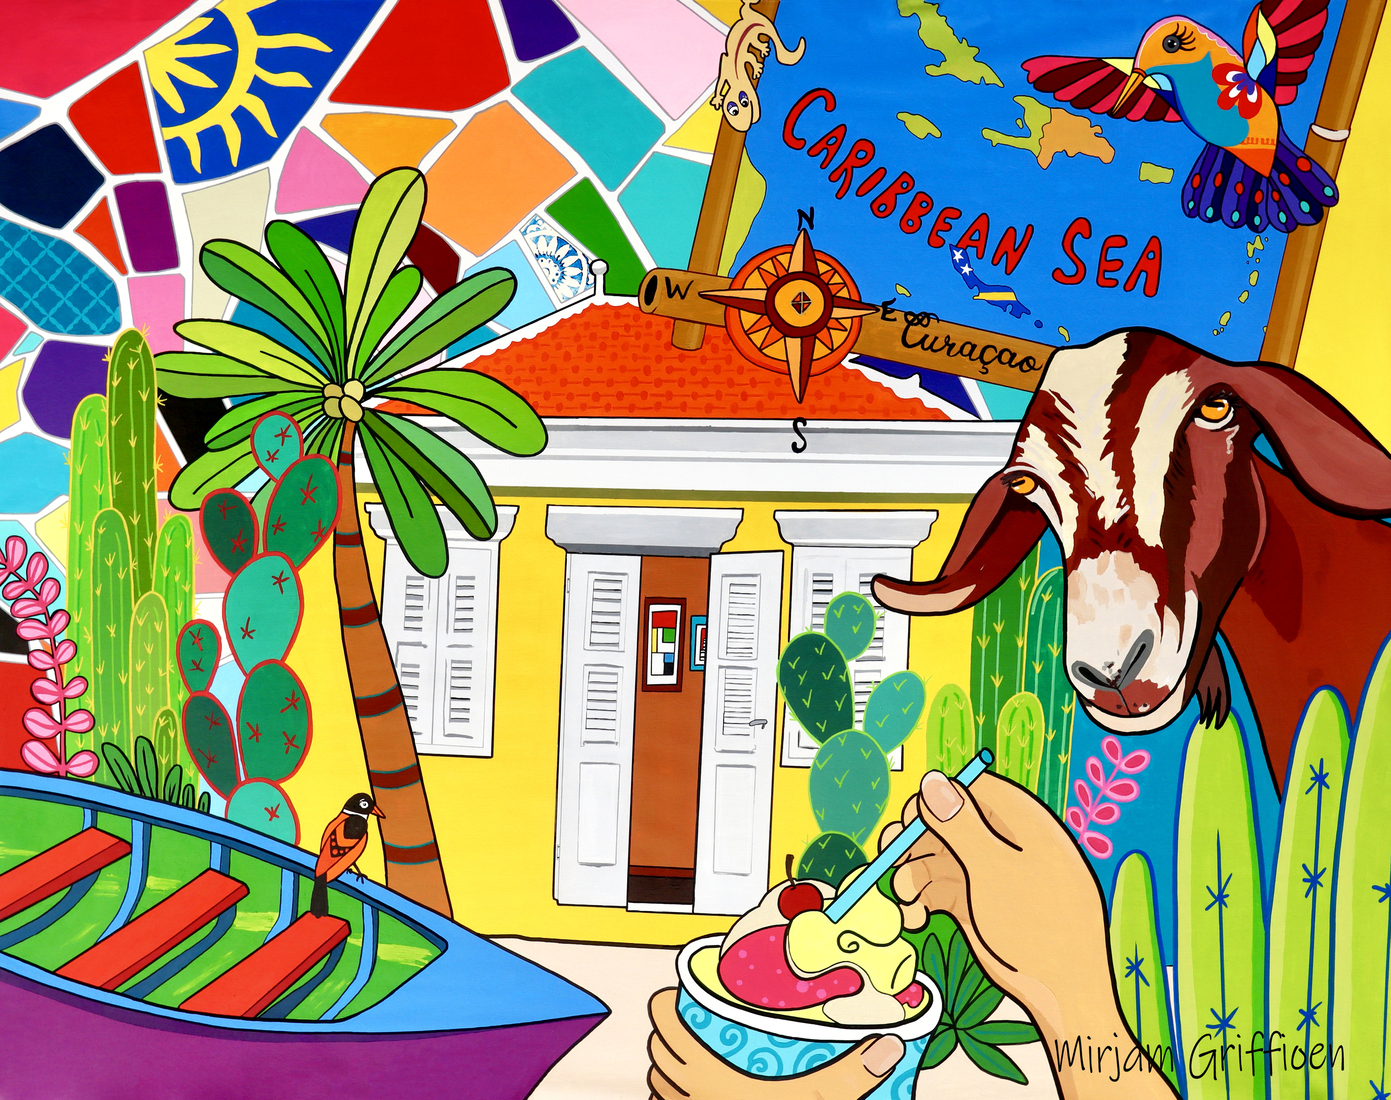 Monumentaal huis in de Bargestraat op Curacao, mooie kleuren in het Caribisch gebied.